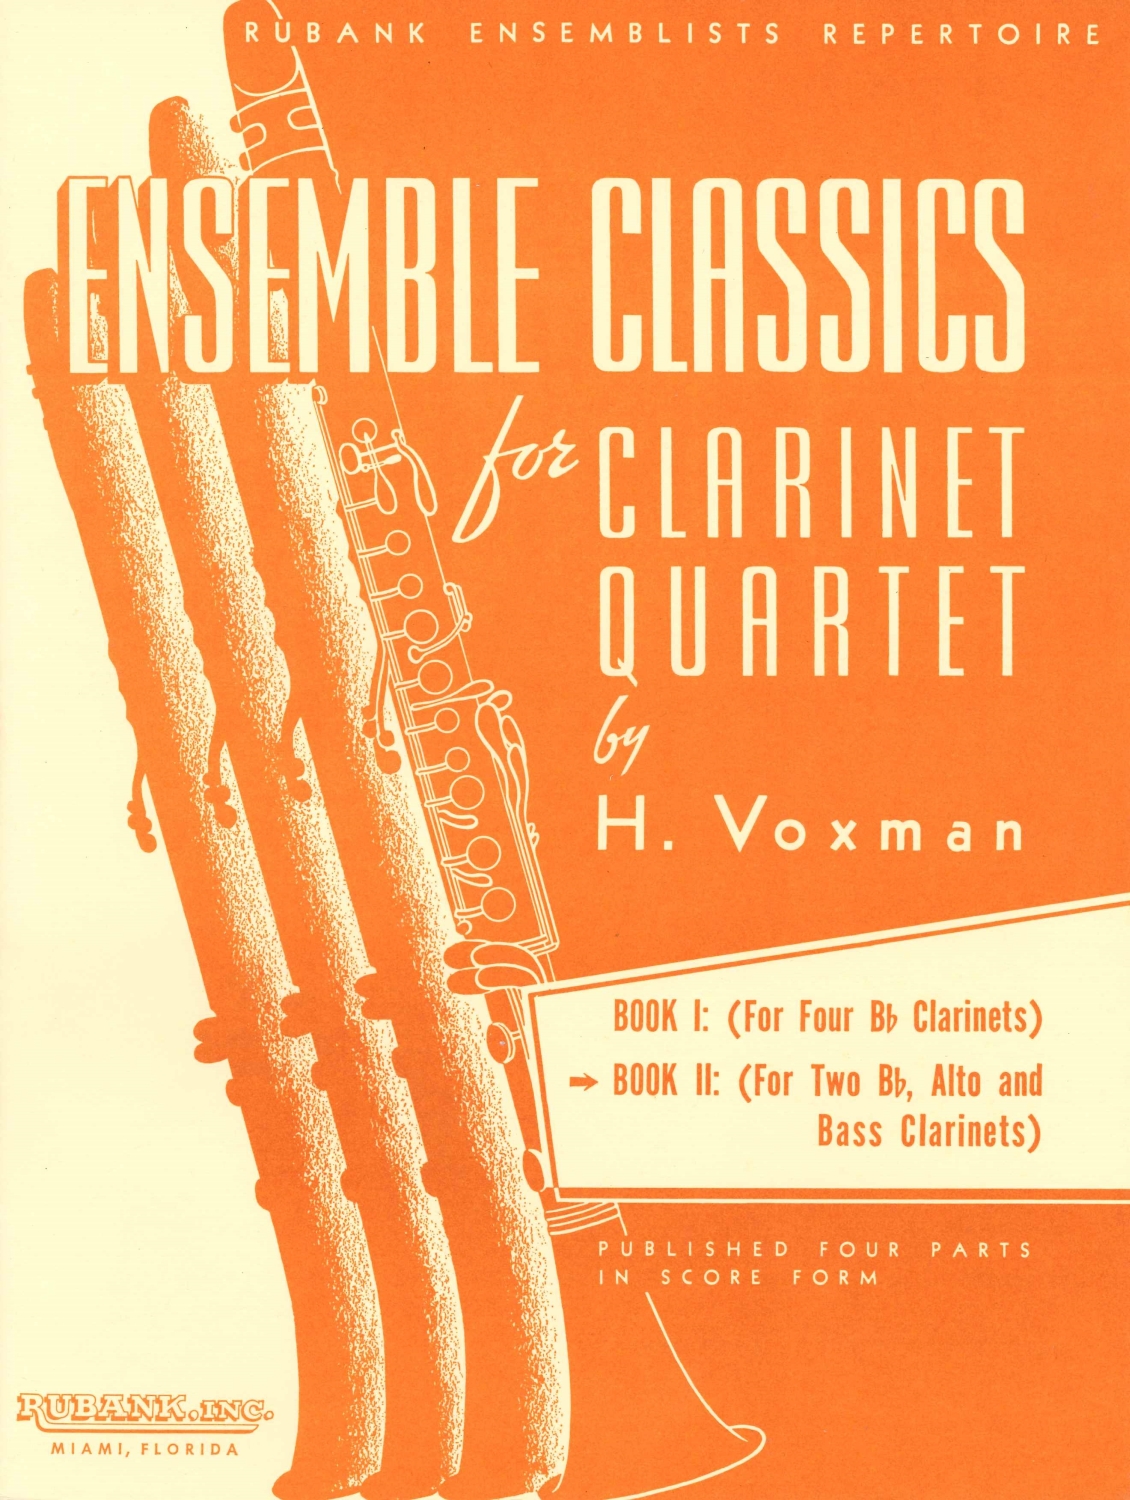 himie-voxman-ensemble-classics-vol-2-4clr-_partitu_0001.JPG